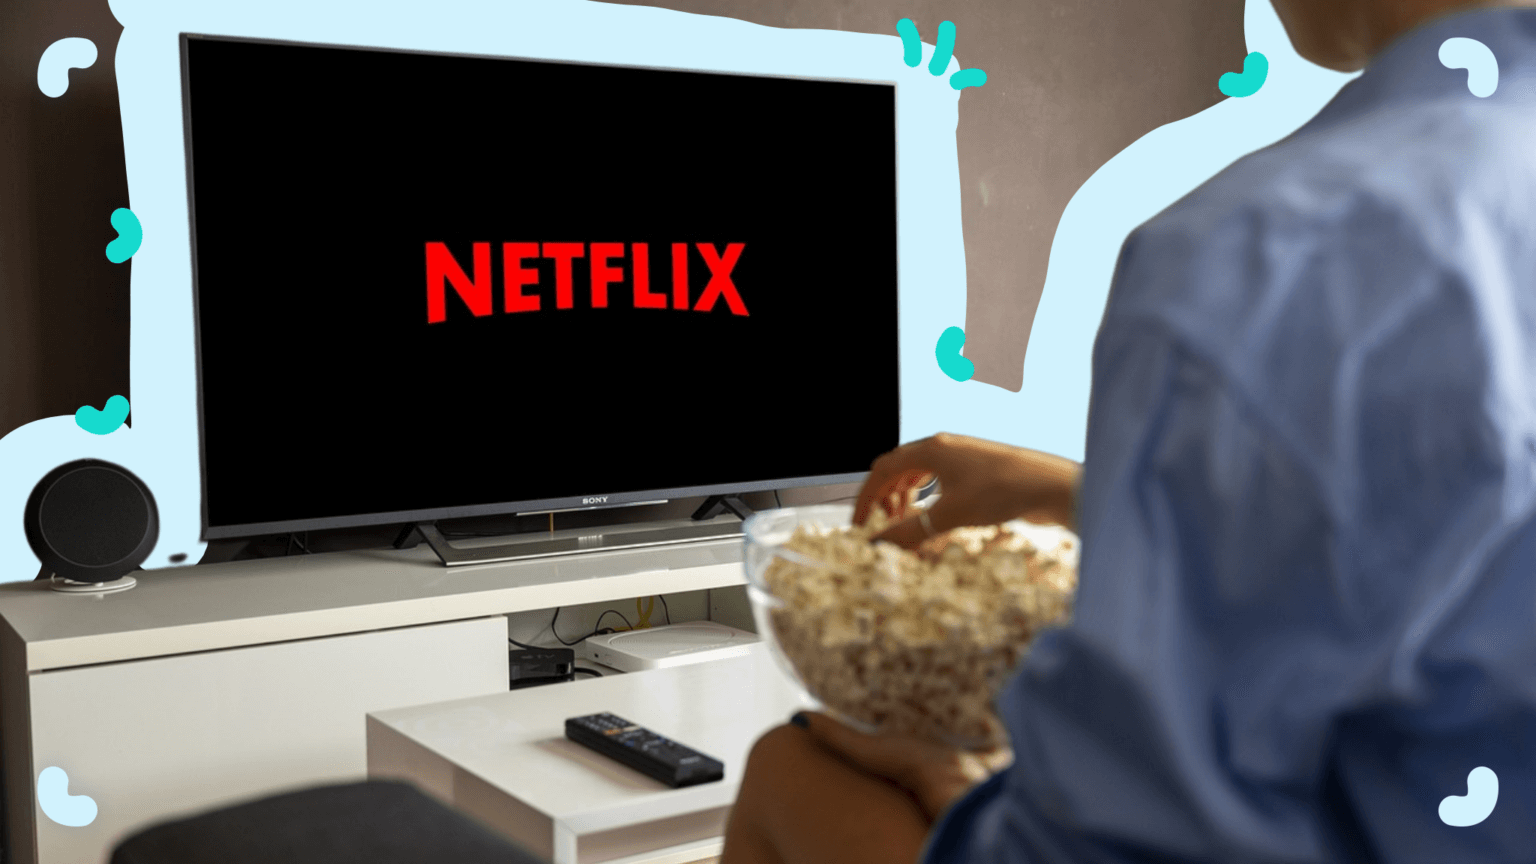 The Netflix Effect